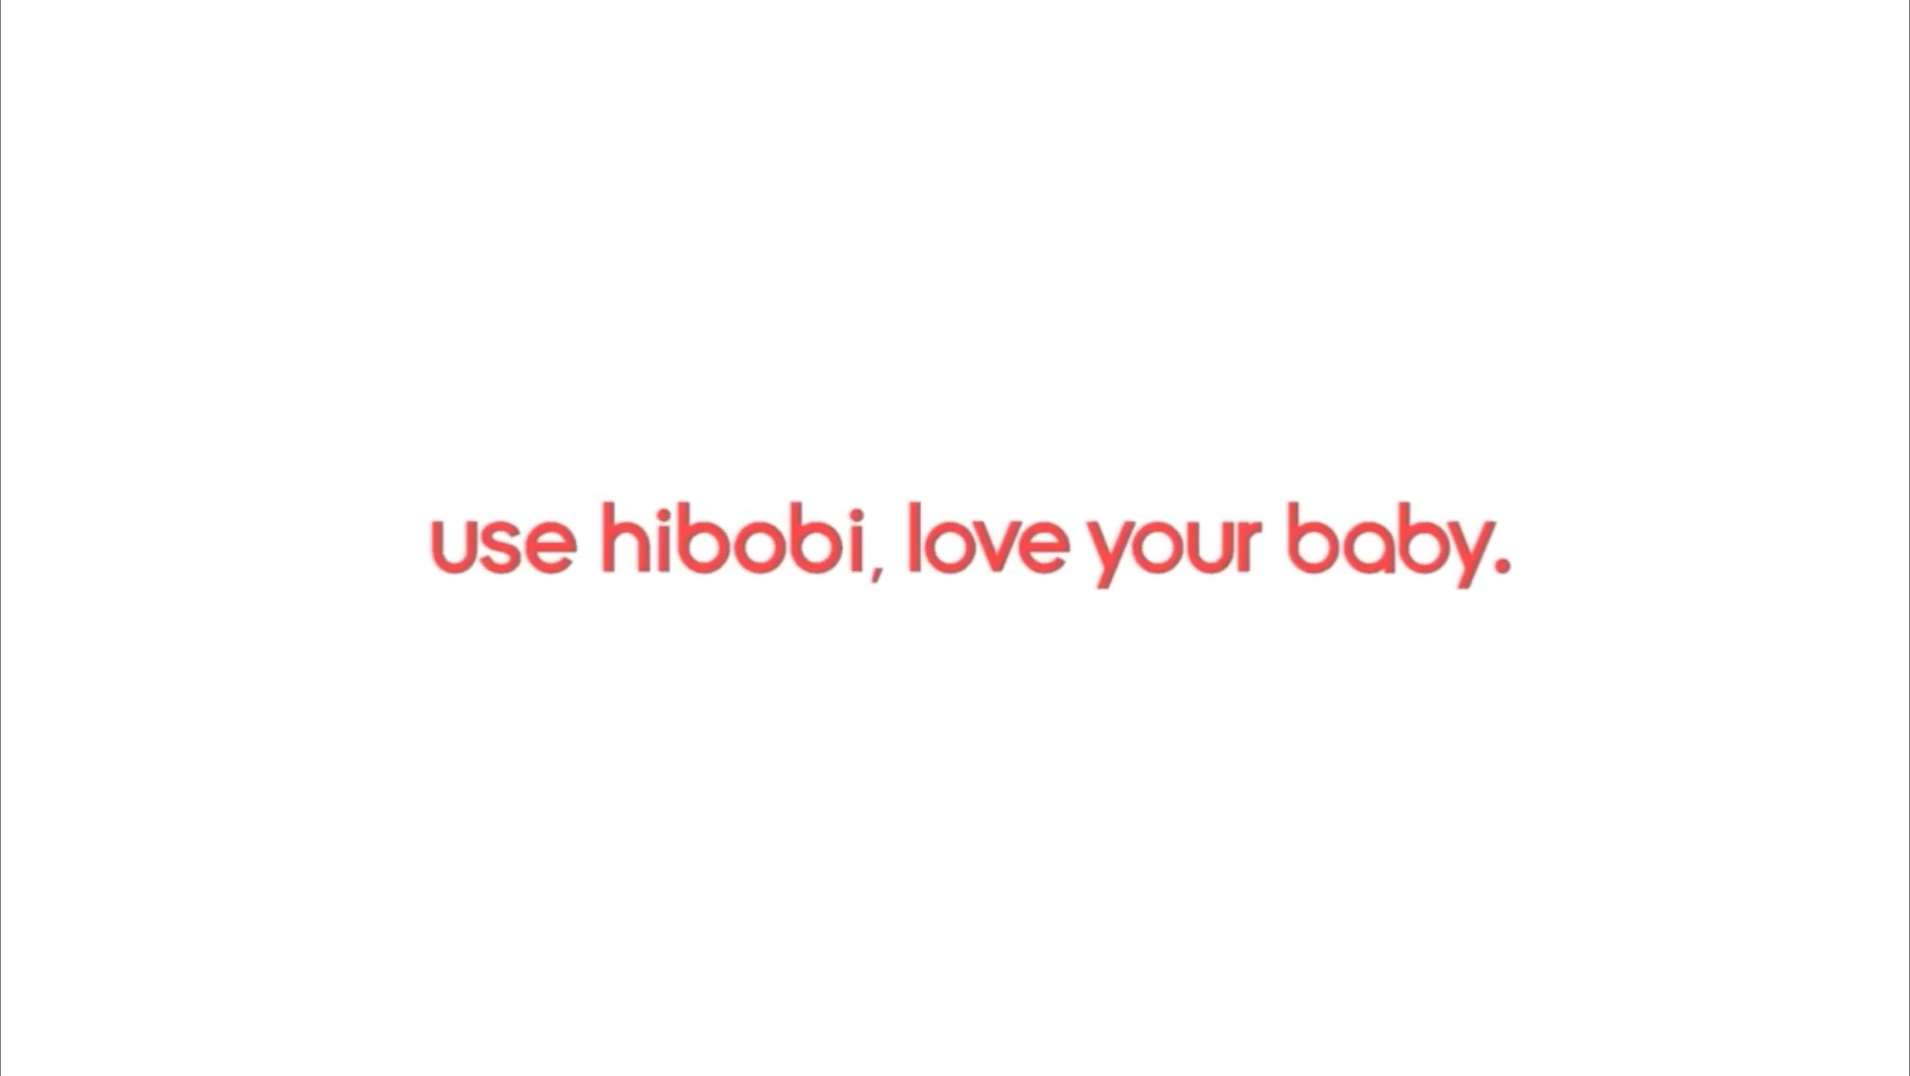 HIBOBI